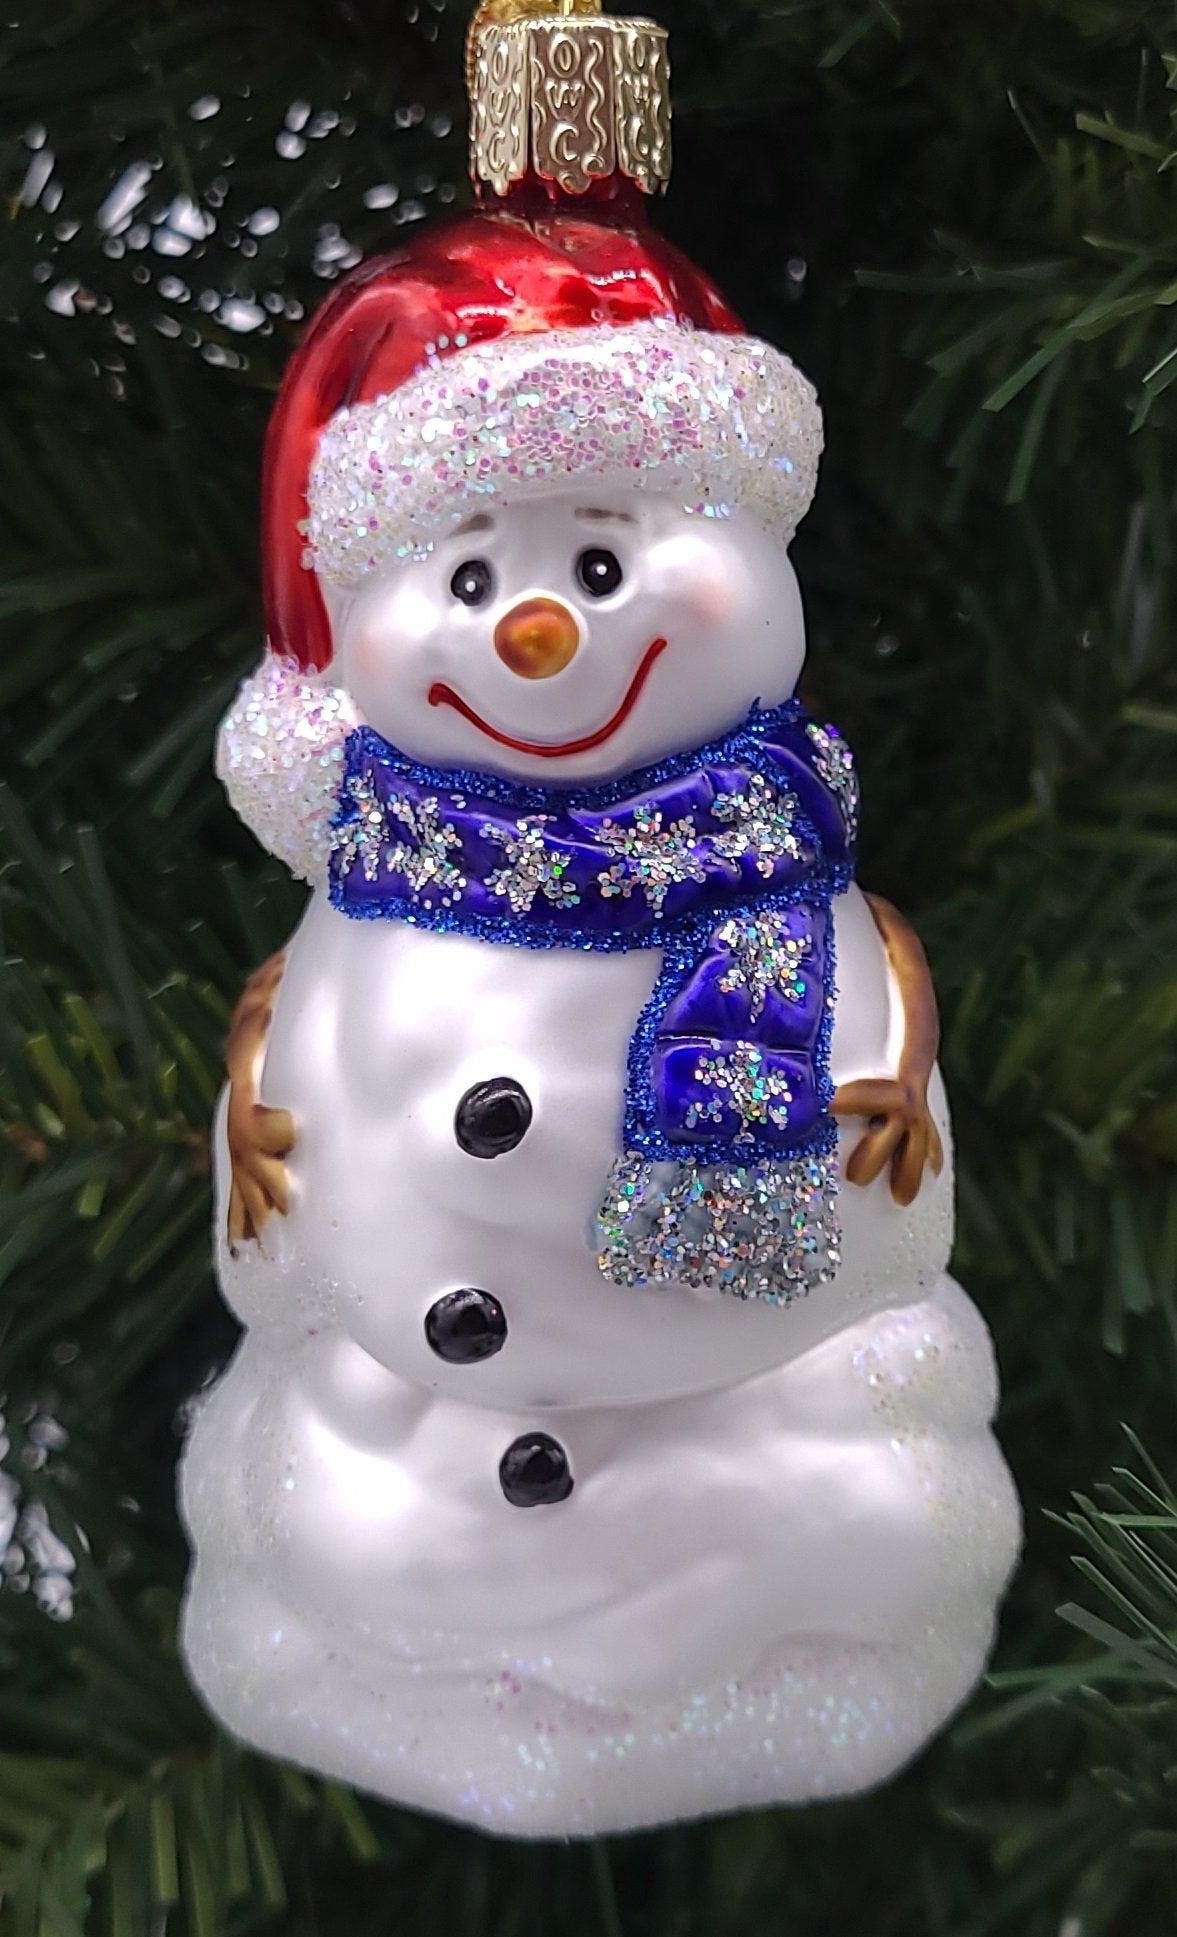 吹制玻璃递快乐雪人圣诞装饰品 - 施密特圣诞市场圣诞装饰